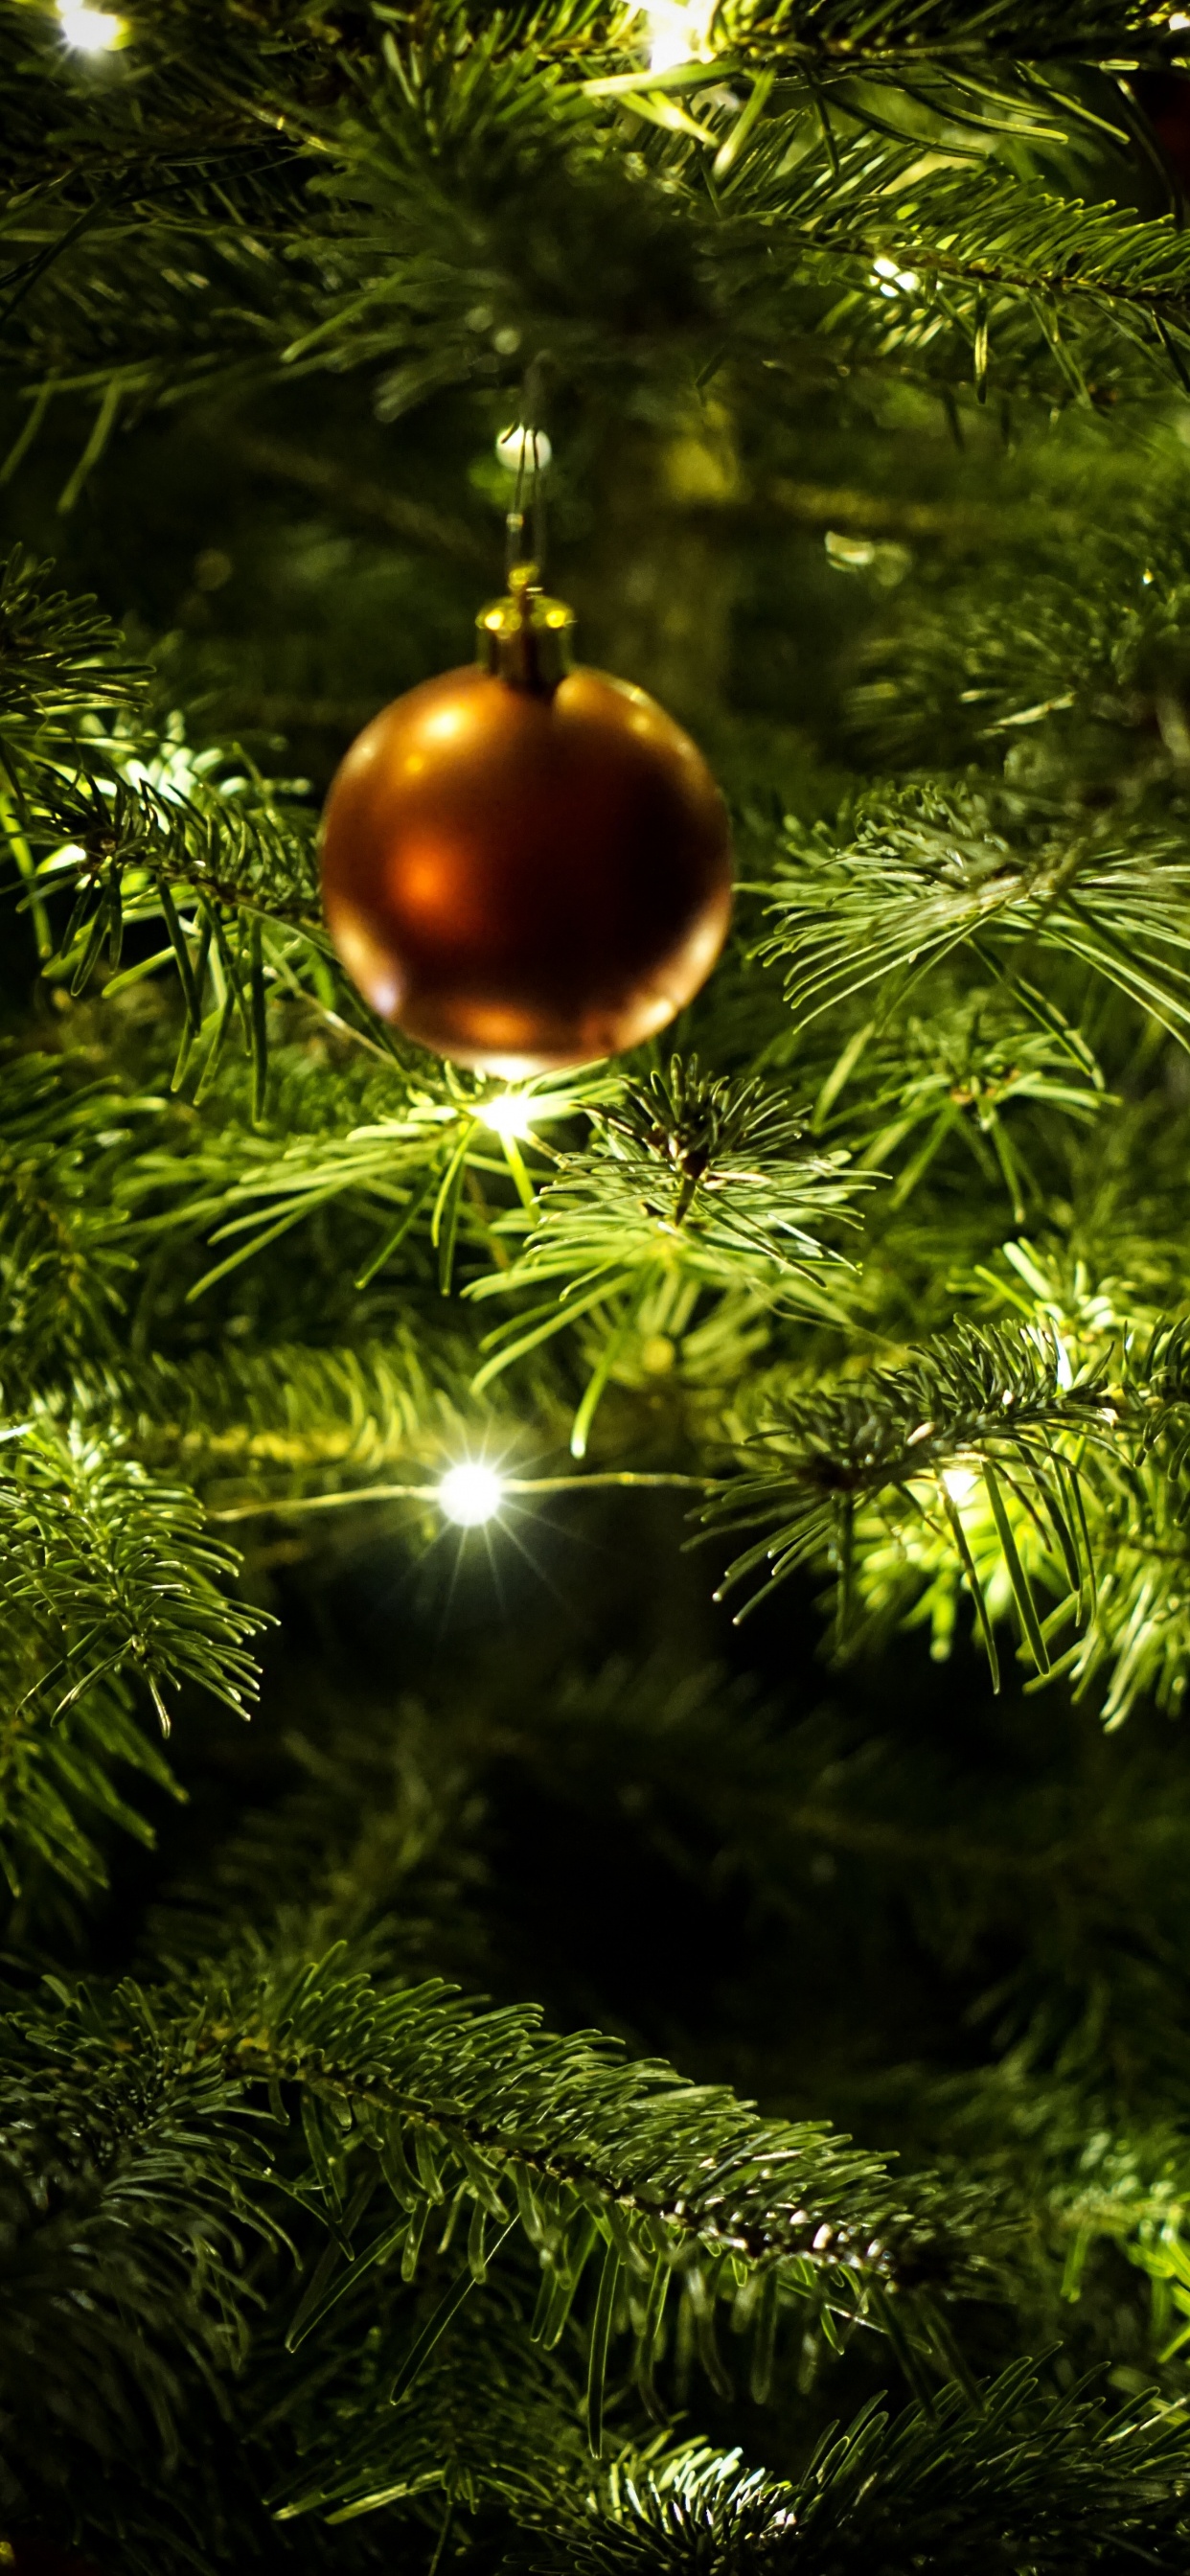 Neujahr, Weihnachten, Christmas Ornament, Weihnachtsdekoration, Weihnachtsbaum. Wallpaper in 1242x2688 Resolution